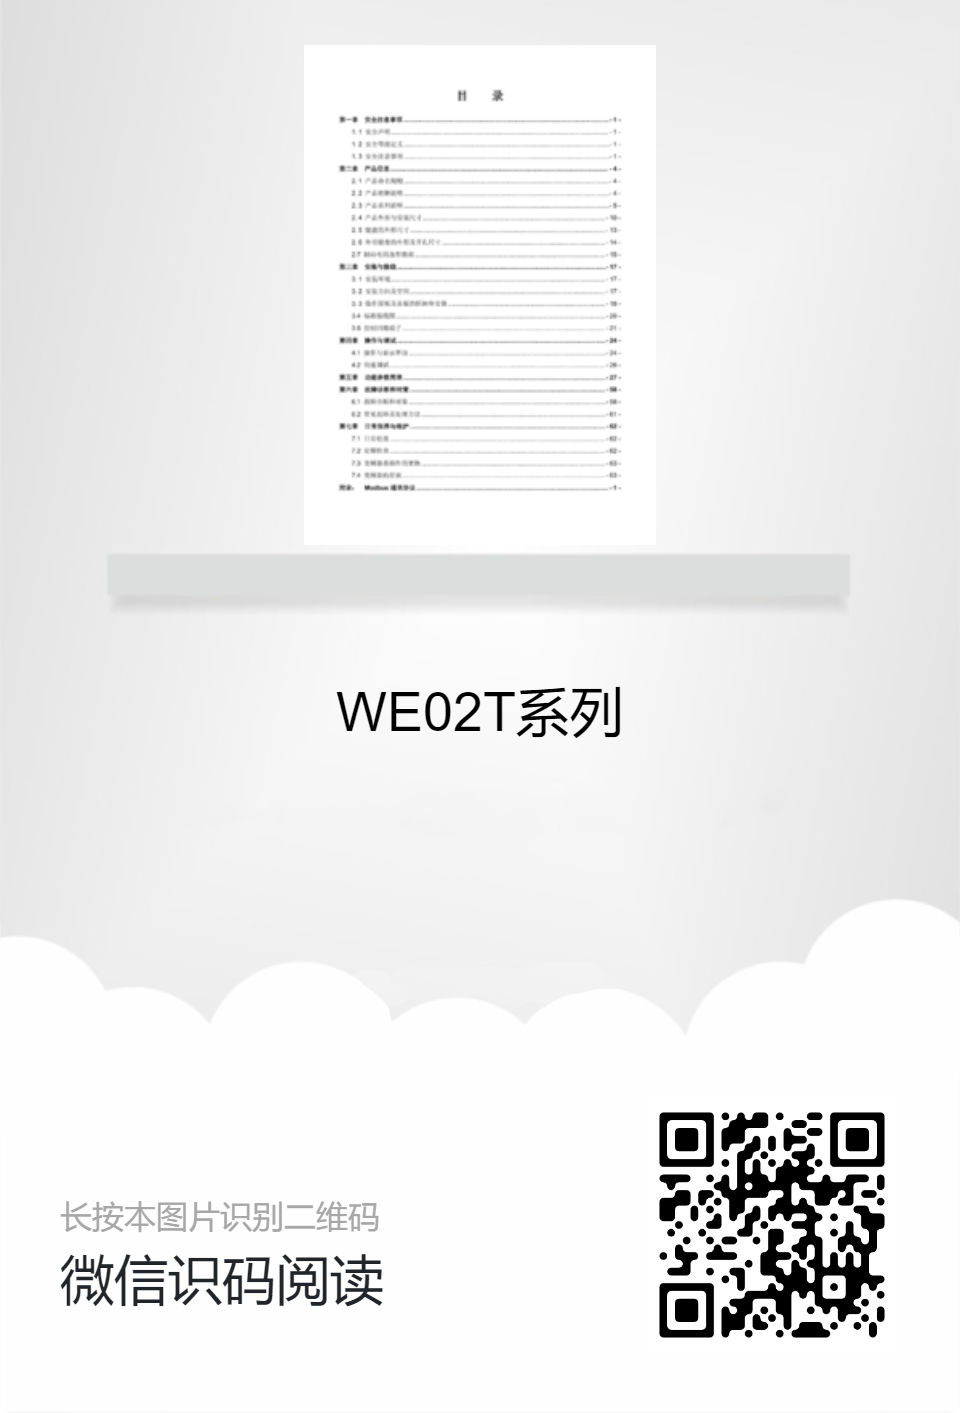 WE02T系列产品说明书